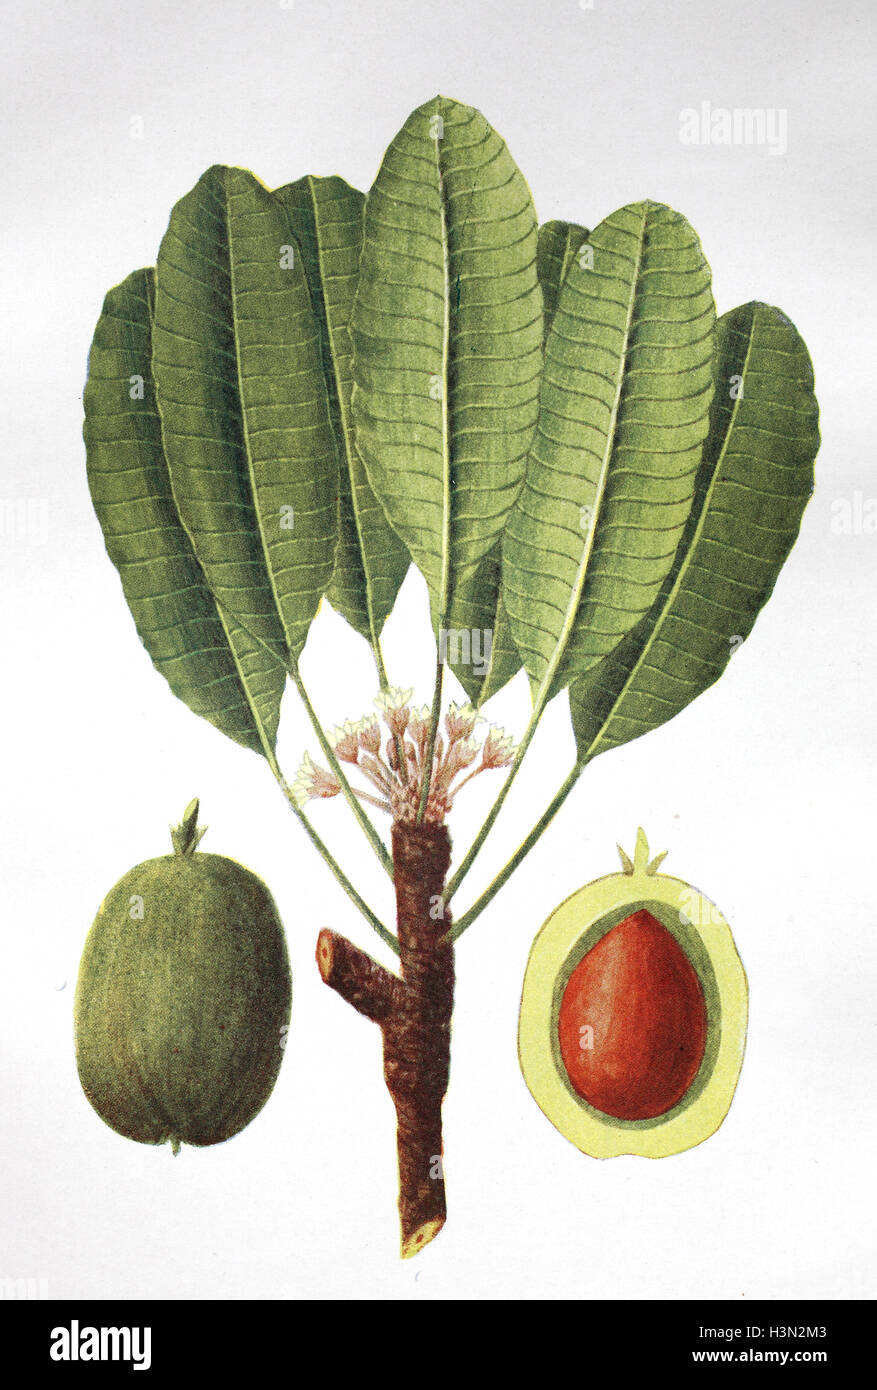 Vitellaria paradoxa, formerly Butyrospermum parkii, commonly known as shea tree, shi tree, historical illustration, 1880 Stock Photo